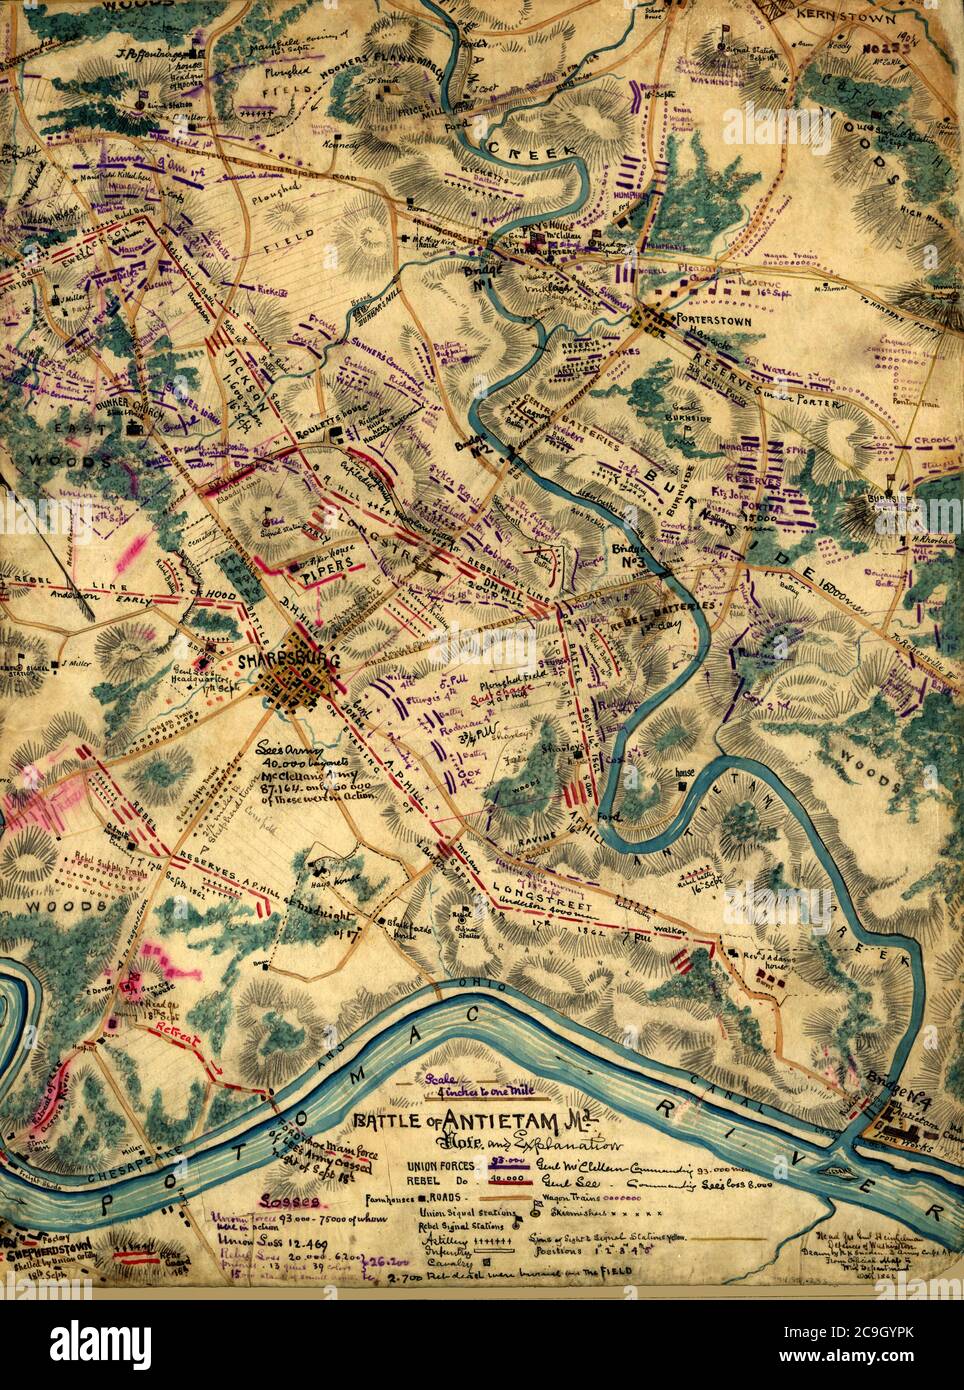 Battaglia di Antietam, Maryland - Guerra civile americana - in questa mappa estremamente dettagliata, Sneden indica le posizioni di strade, ponti, il canale Chesapeake e Ohio, case, fienili, campi arati, e le opere di ferro Antietam. Si notano anche le stazioni di segnale dell'Unione e dei confederati. La linea di battaglia si trova ad est della città di Sharpsburg il 16 settembre; comprendendo la città il 17 settembre (dopo la battaglia reale); e ad ovest della città il 18 settembre, mentre le truppe confederate di Lee si ritirarono attraverso il Potomac verso Sheperdstown, West Virginia Foto Stock